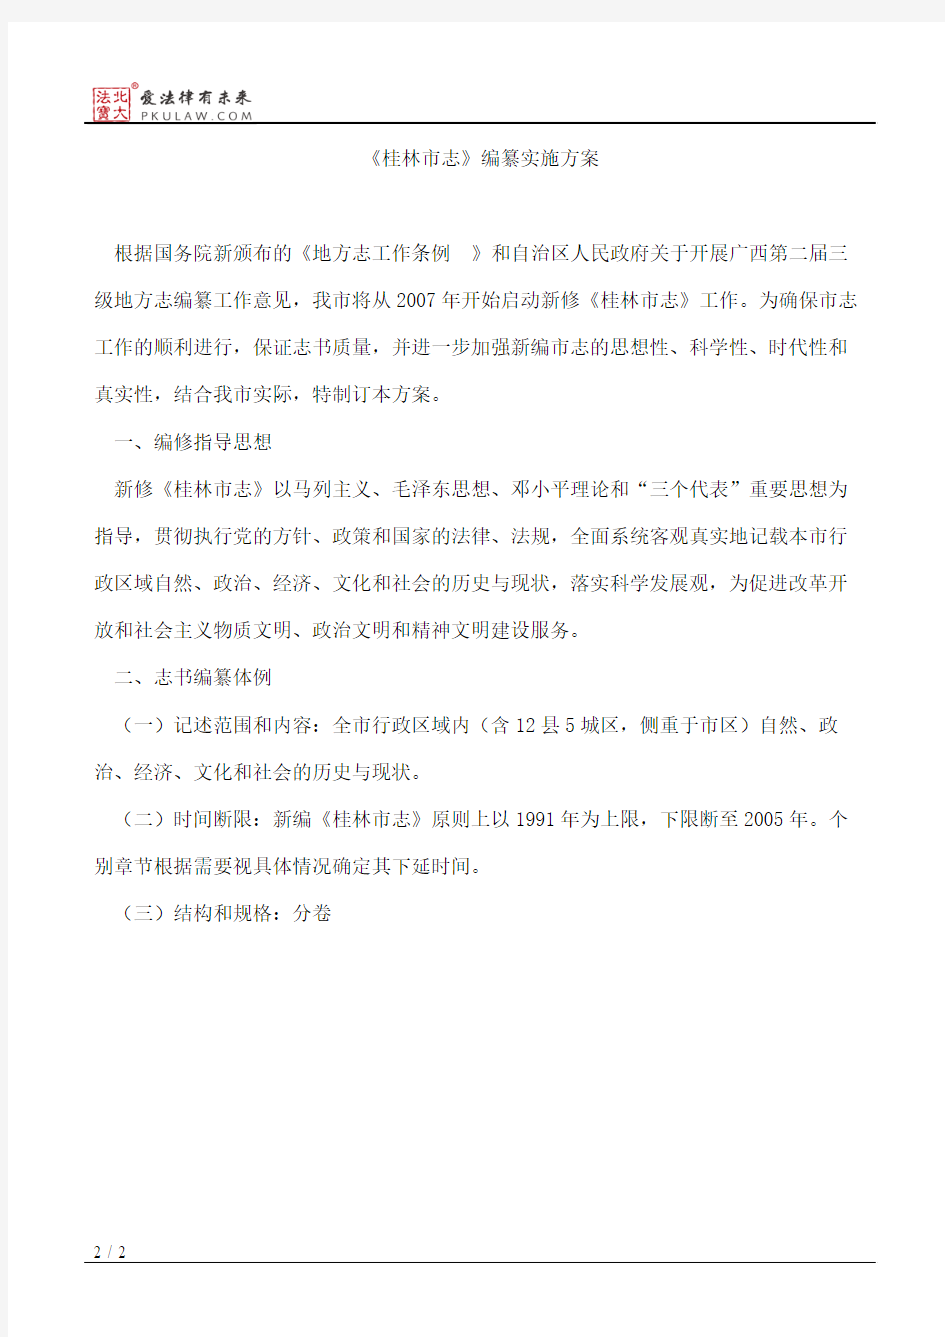 桂林市人民政府办公室关于印发《桂林市志》编纂实施方案的通知